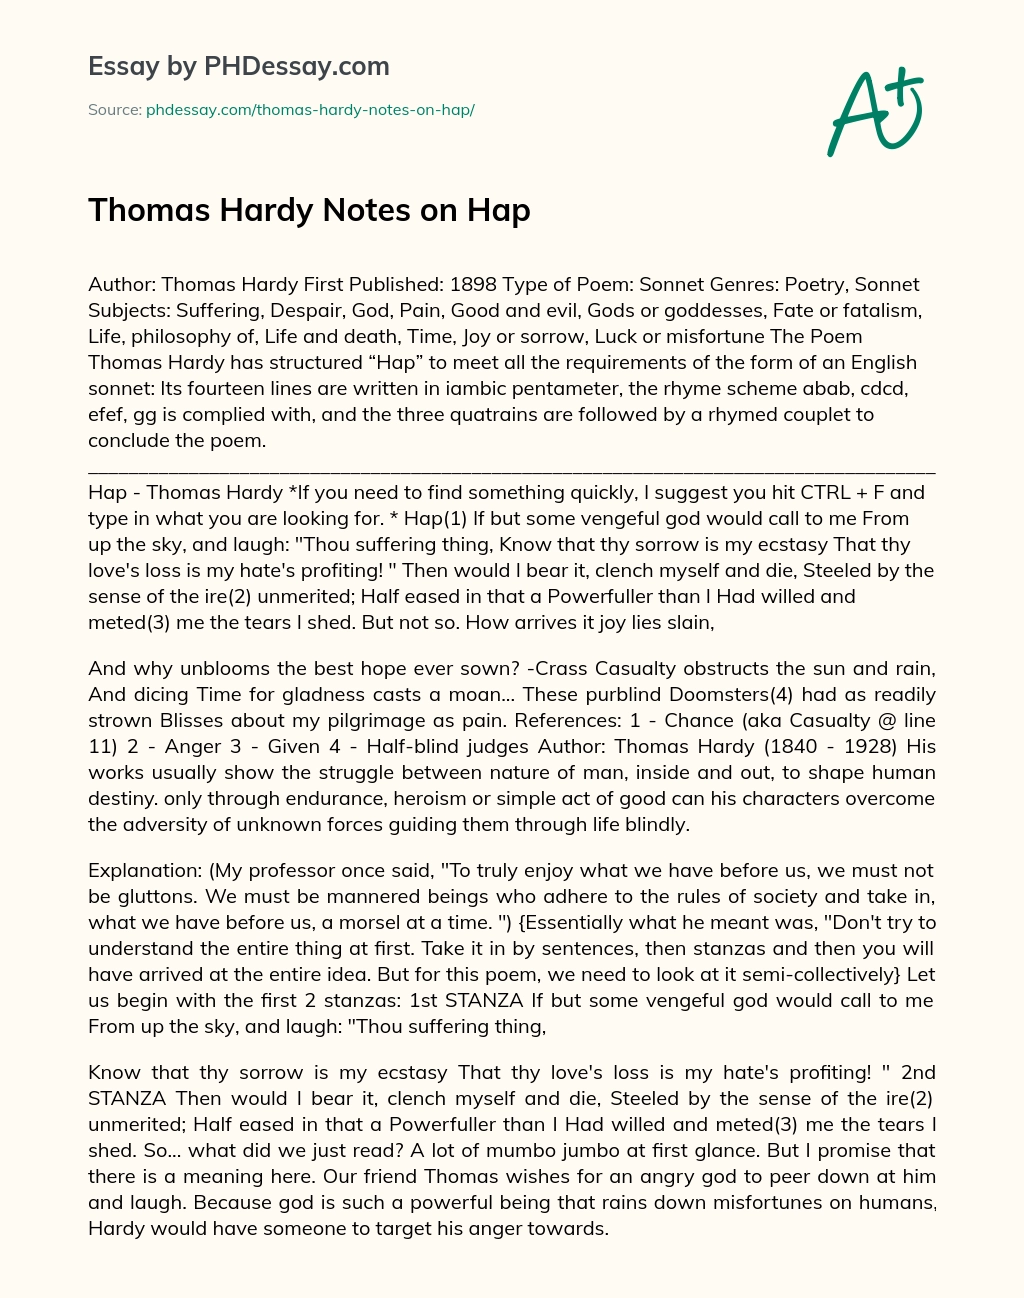 Thomas Hardy Notes on Hap essay